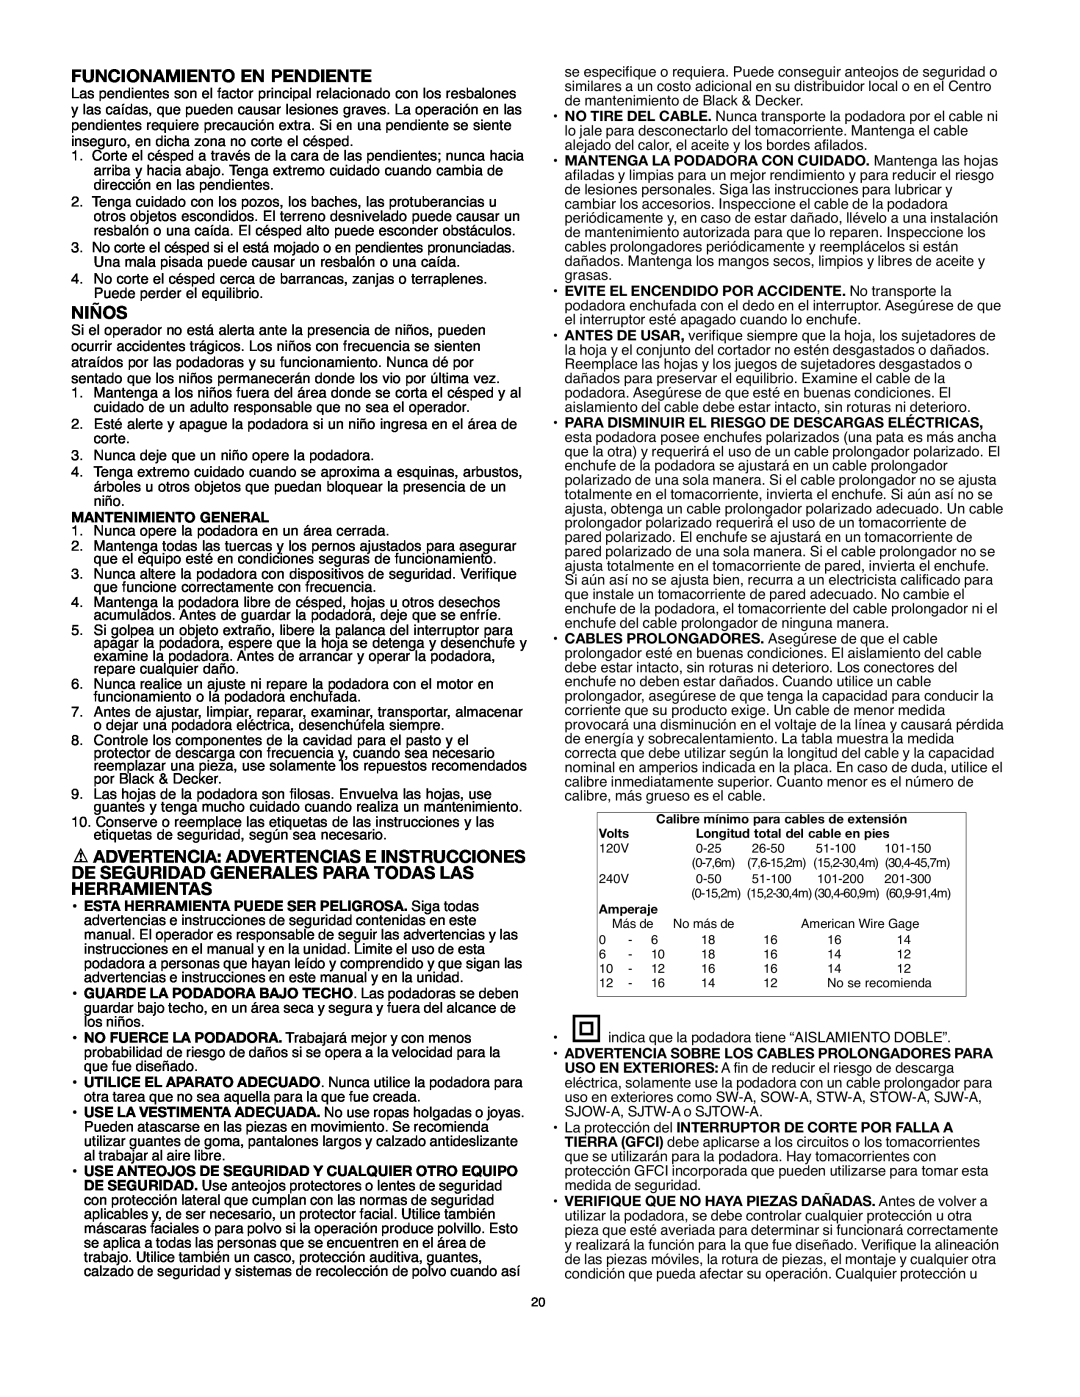 Black & Decker MM675 instruction manual Funcionamiento En Pendiente, Niños, Mantenimiento General 